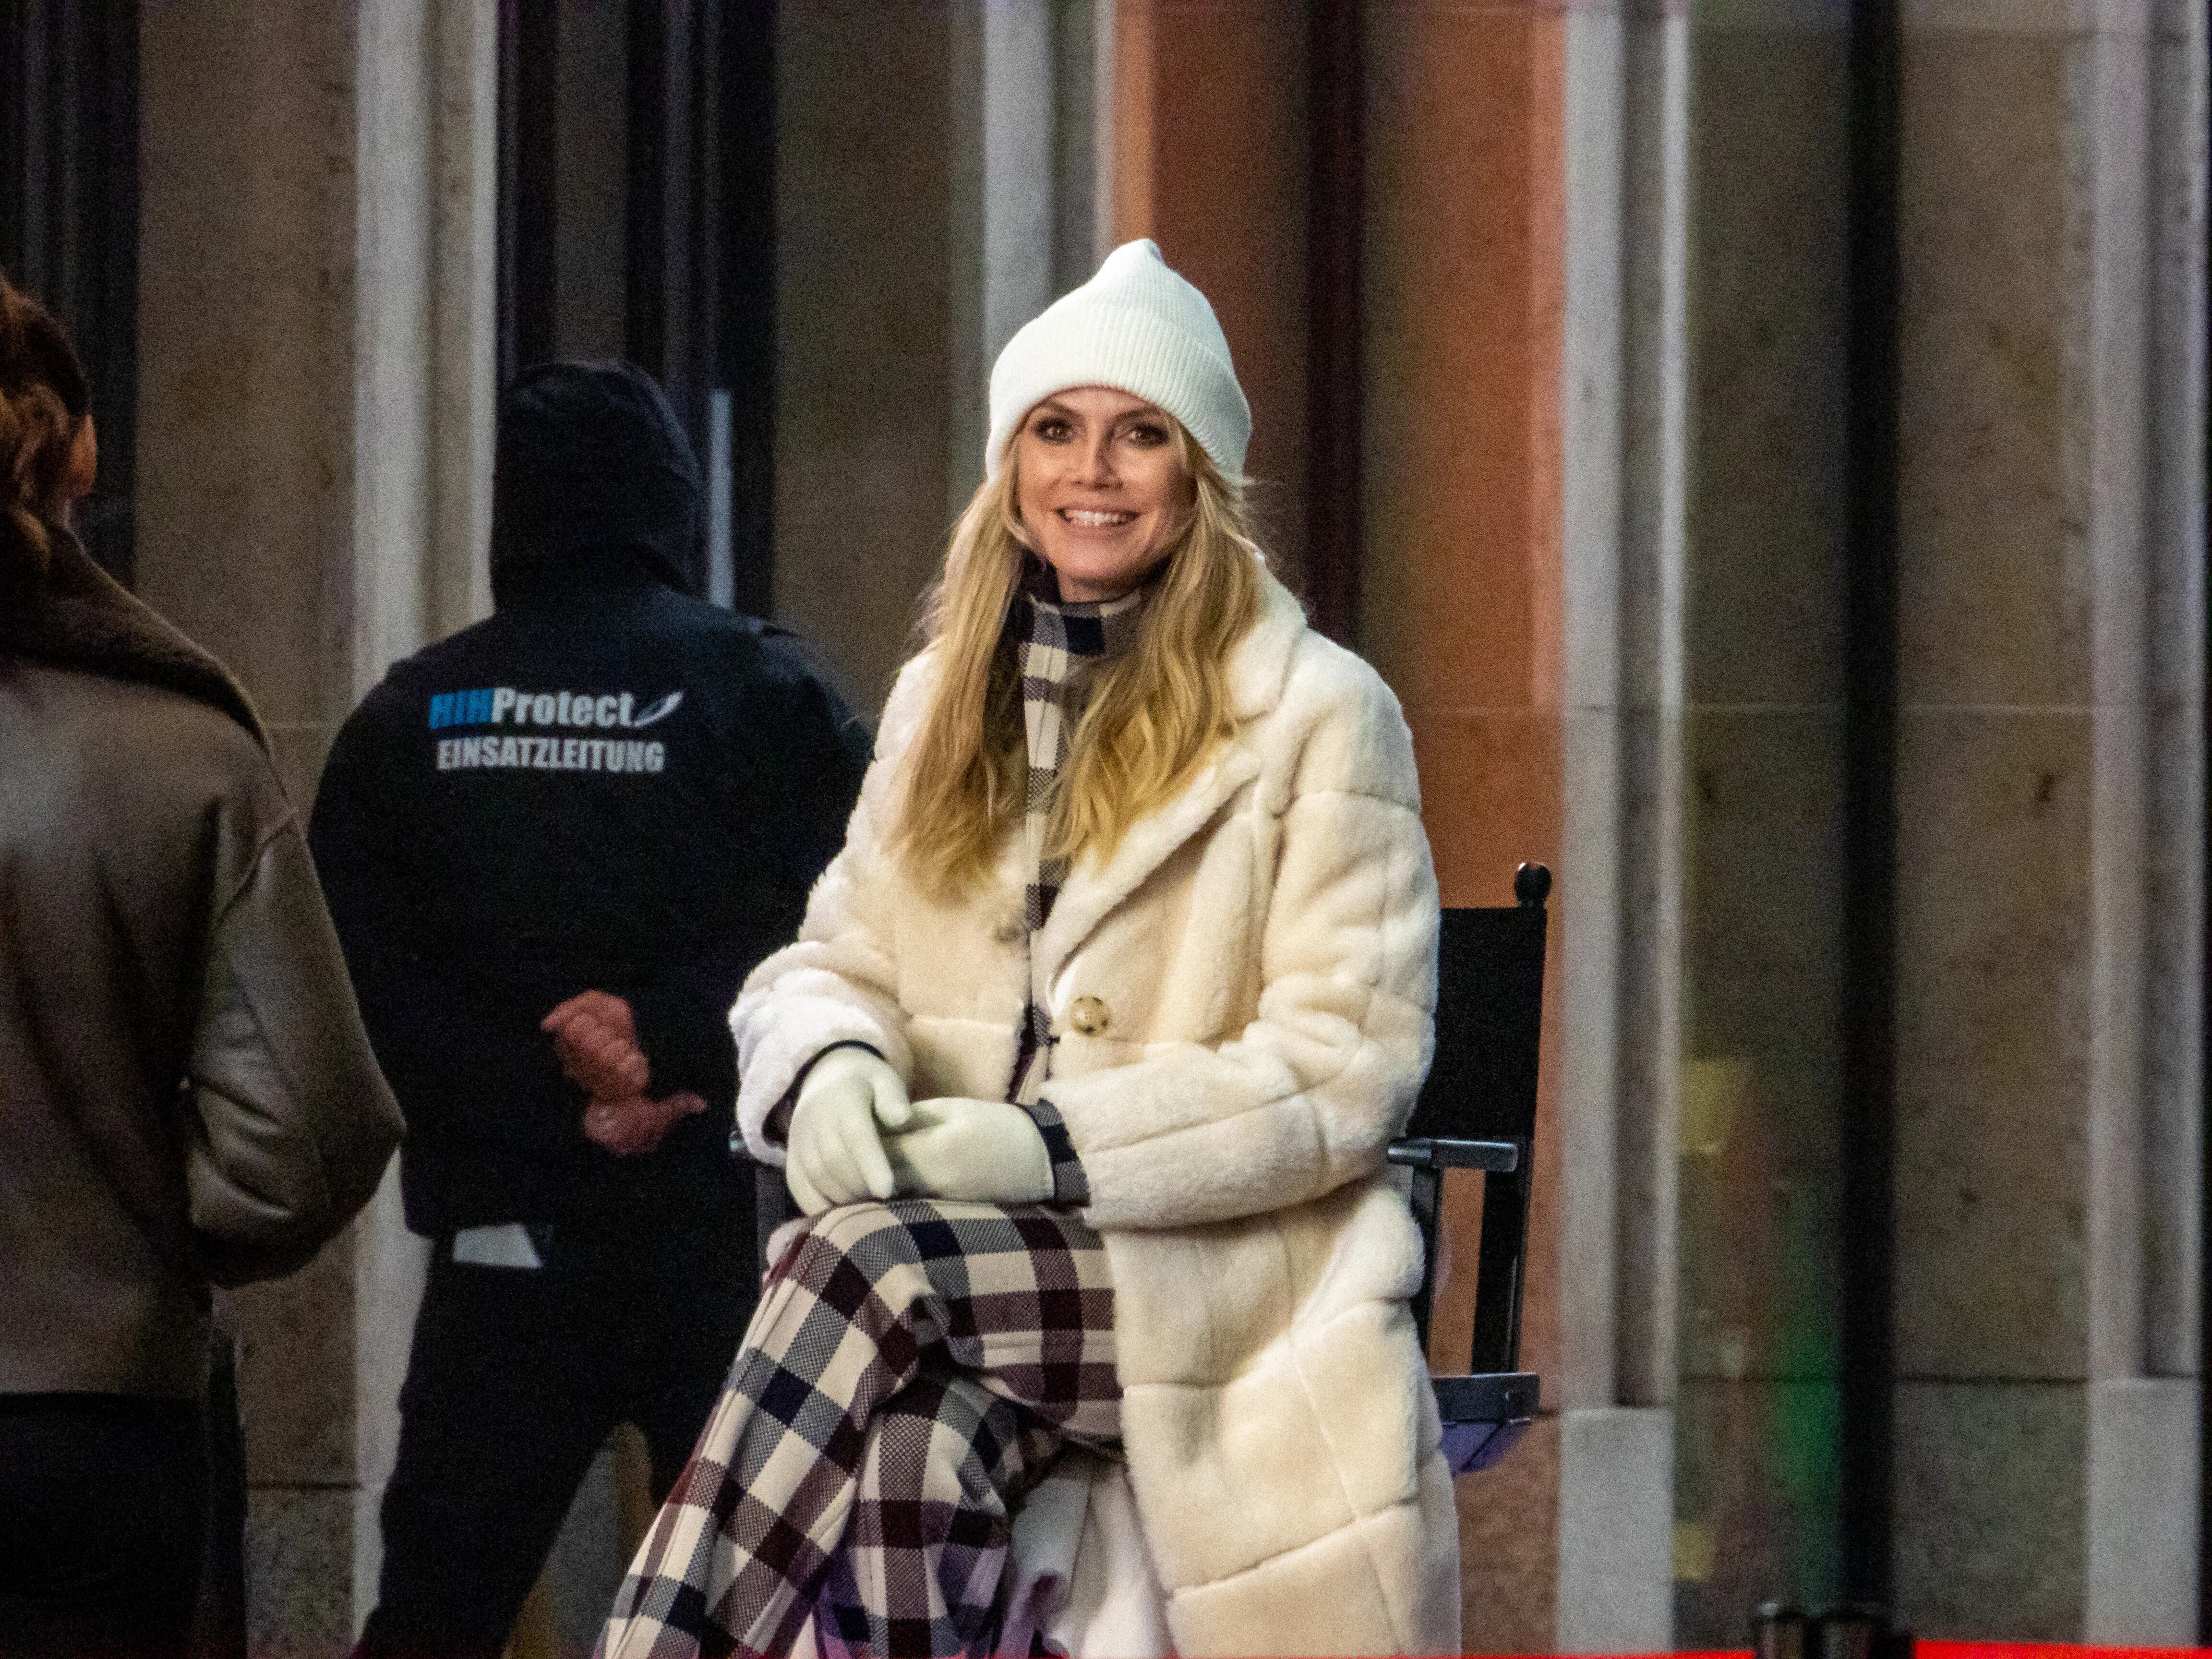 Heidi Klum está filmando la temporada número 16 de “Next Topmodel” en Alemania, Berlín. Para ello, la modelo se trasladó hace algunos meses a dicho país junto a su familia, con quienes disfruta de paseos y recorridas en sus ratos libres